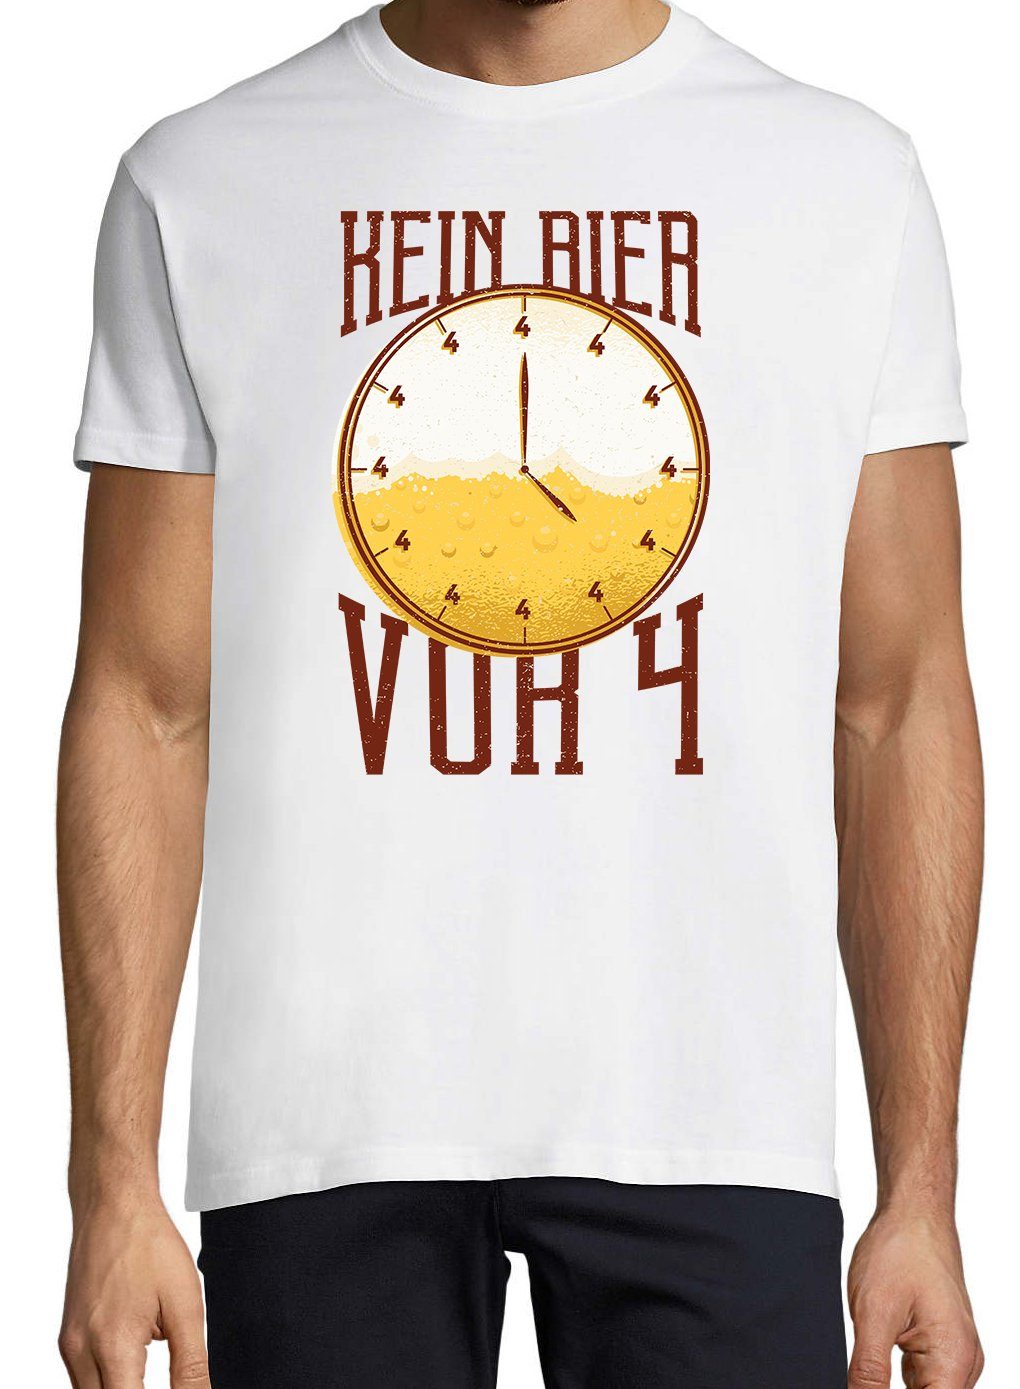 lustigem BierVor4 Shirt Weiß Designz Youth T-Shirt Herren Spruch mit